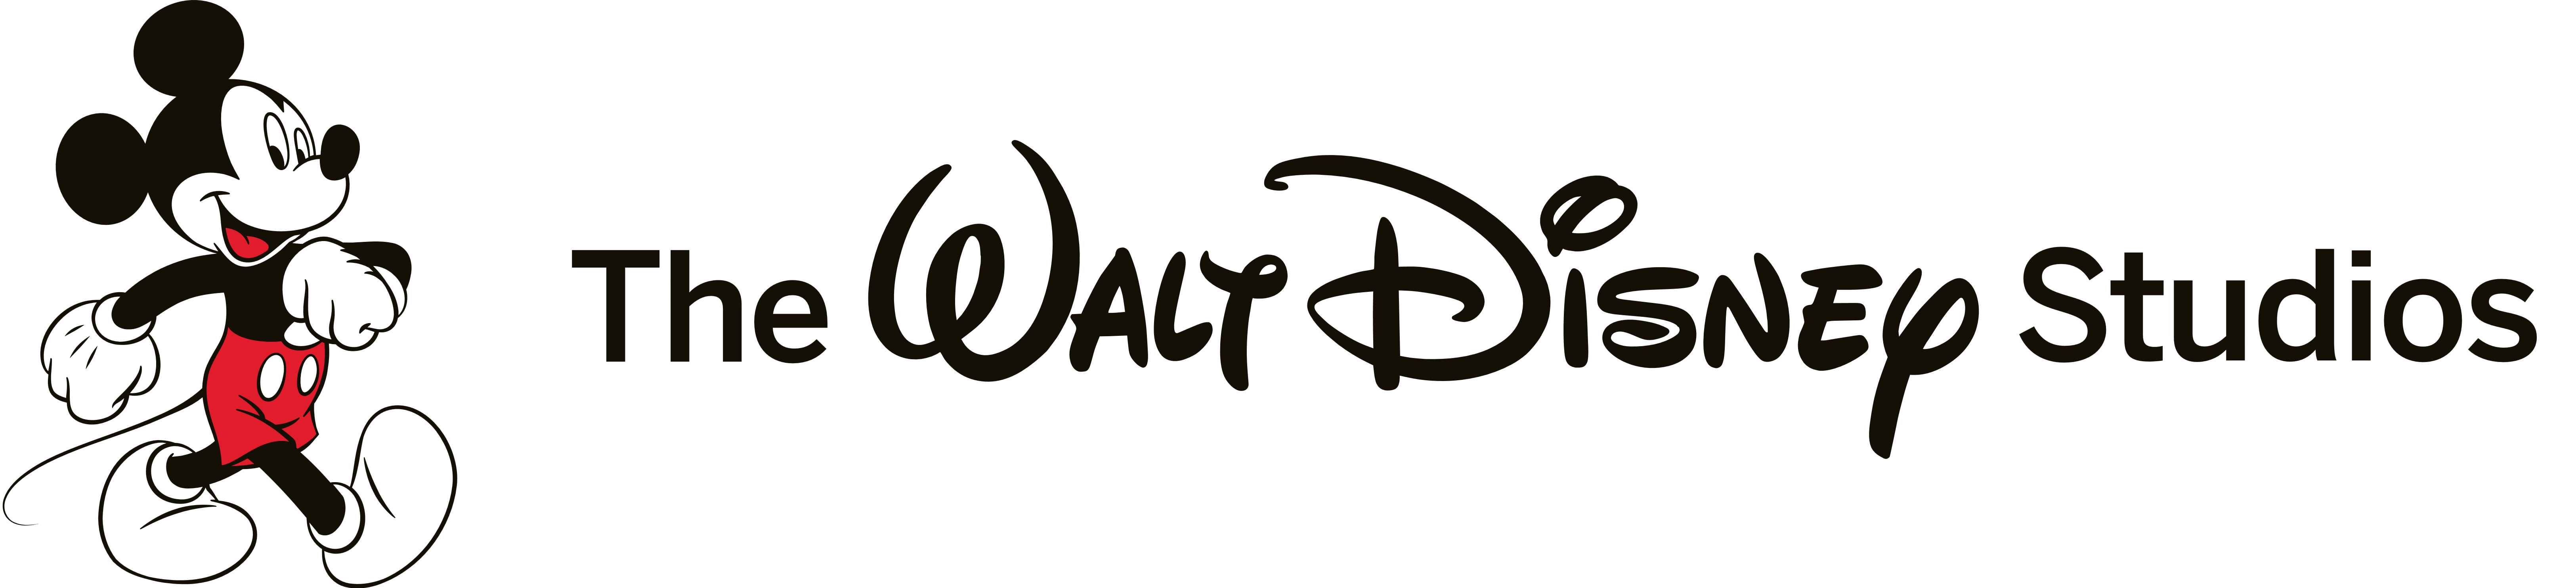 Walt Disney Logo Download Transparent Png Image Png Arts - Reverasite